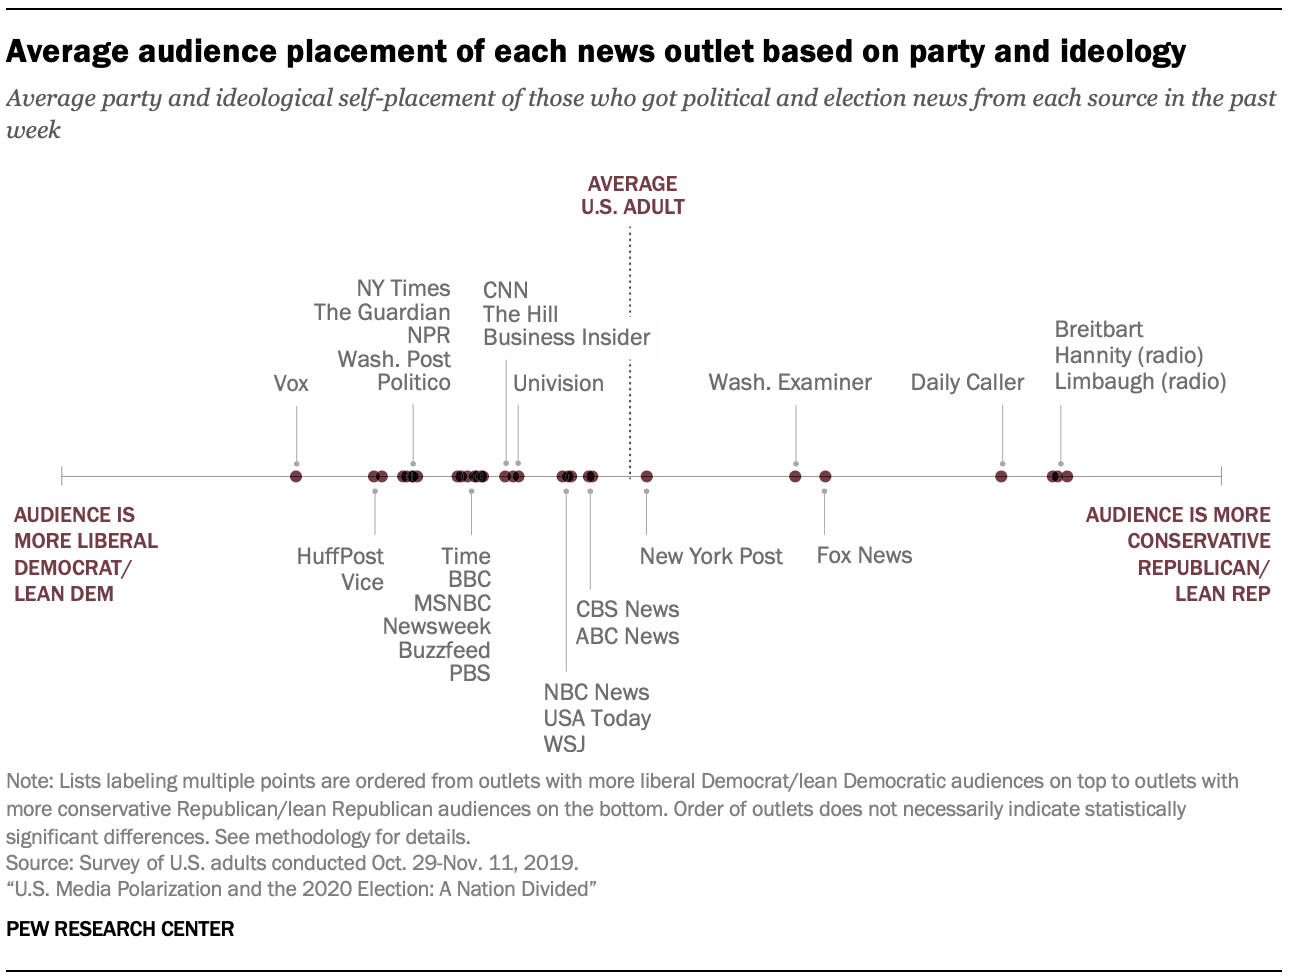 Media Polarization 